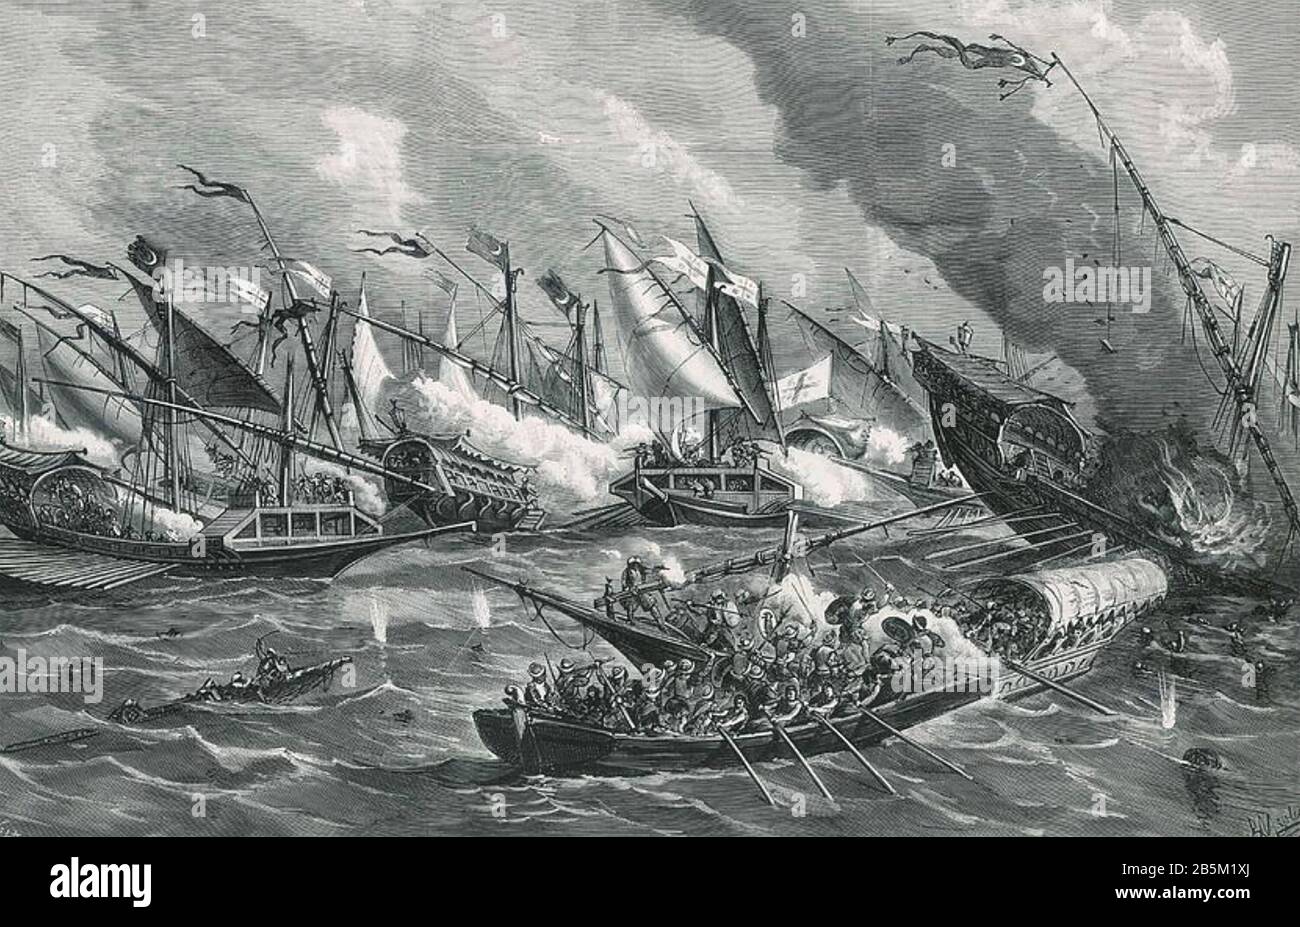 Schlacht VON LEPANTO 7. Oktober 1571, in der eine Koalition europäischer katholischer Staaten die osmanische Flotte besiegte Stockfoto